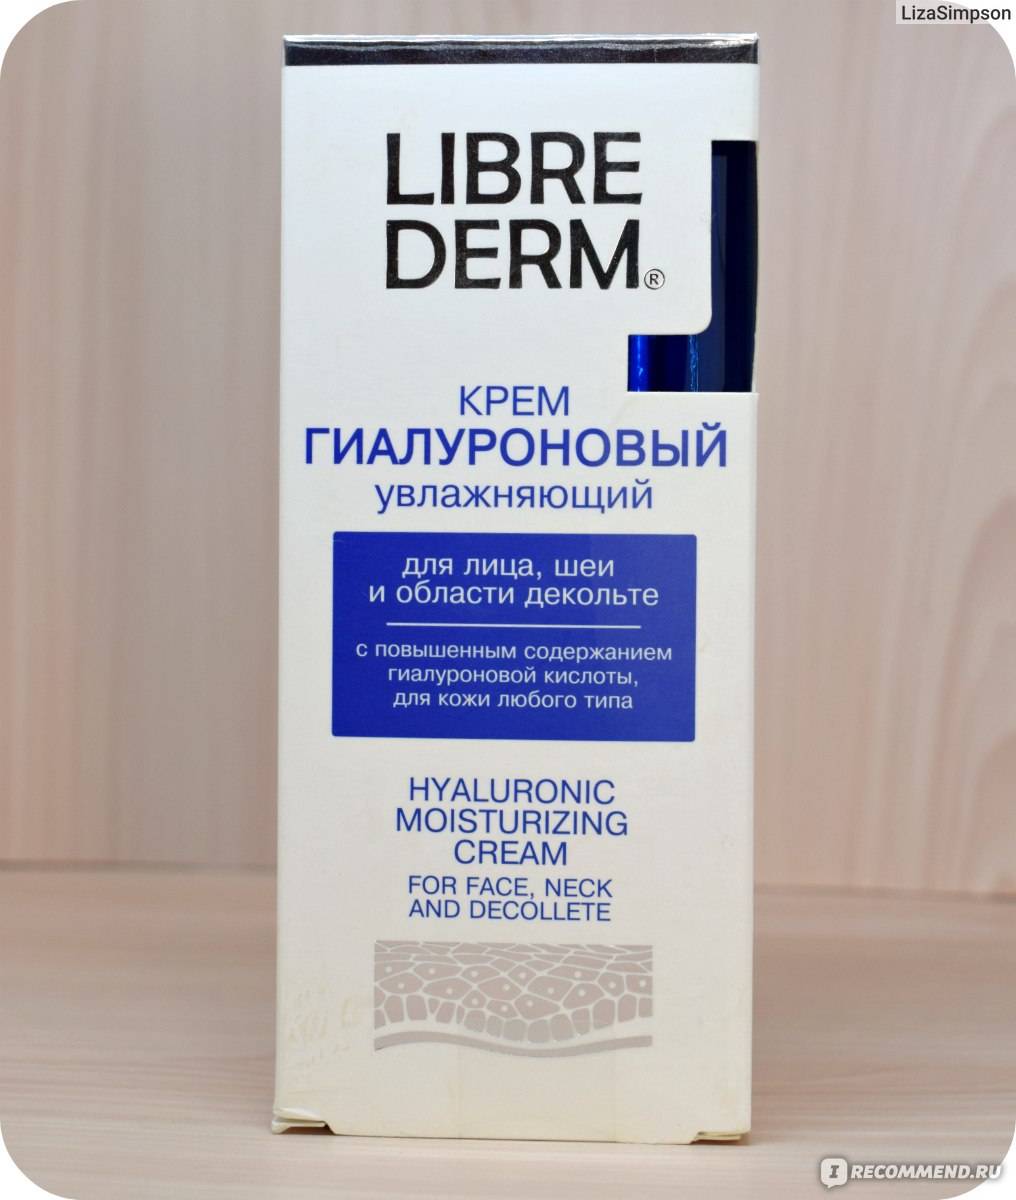 Либридерм (librederm) крем: таблица по возрастам, косметика для жирной кожи лица, страна-производитель, увлажняющий с цинком и гиалуроновой кислотой, от прыщей